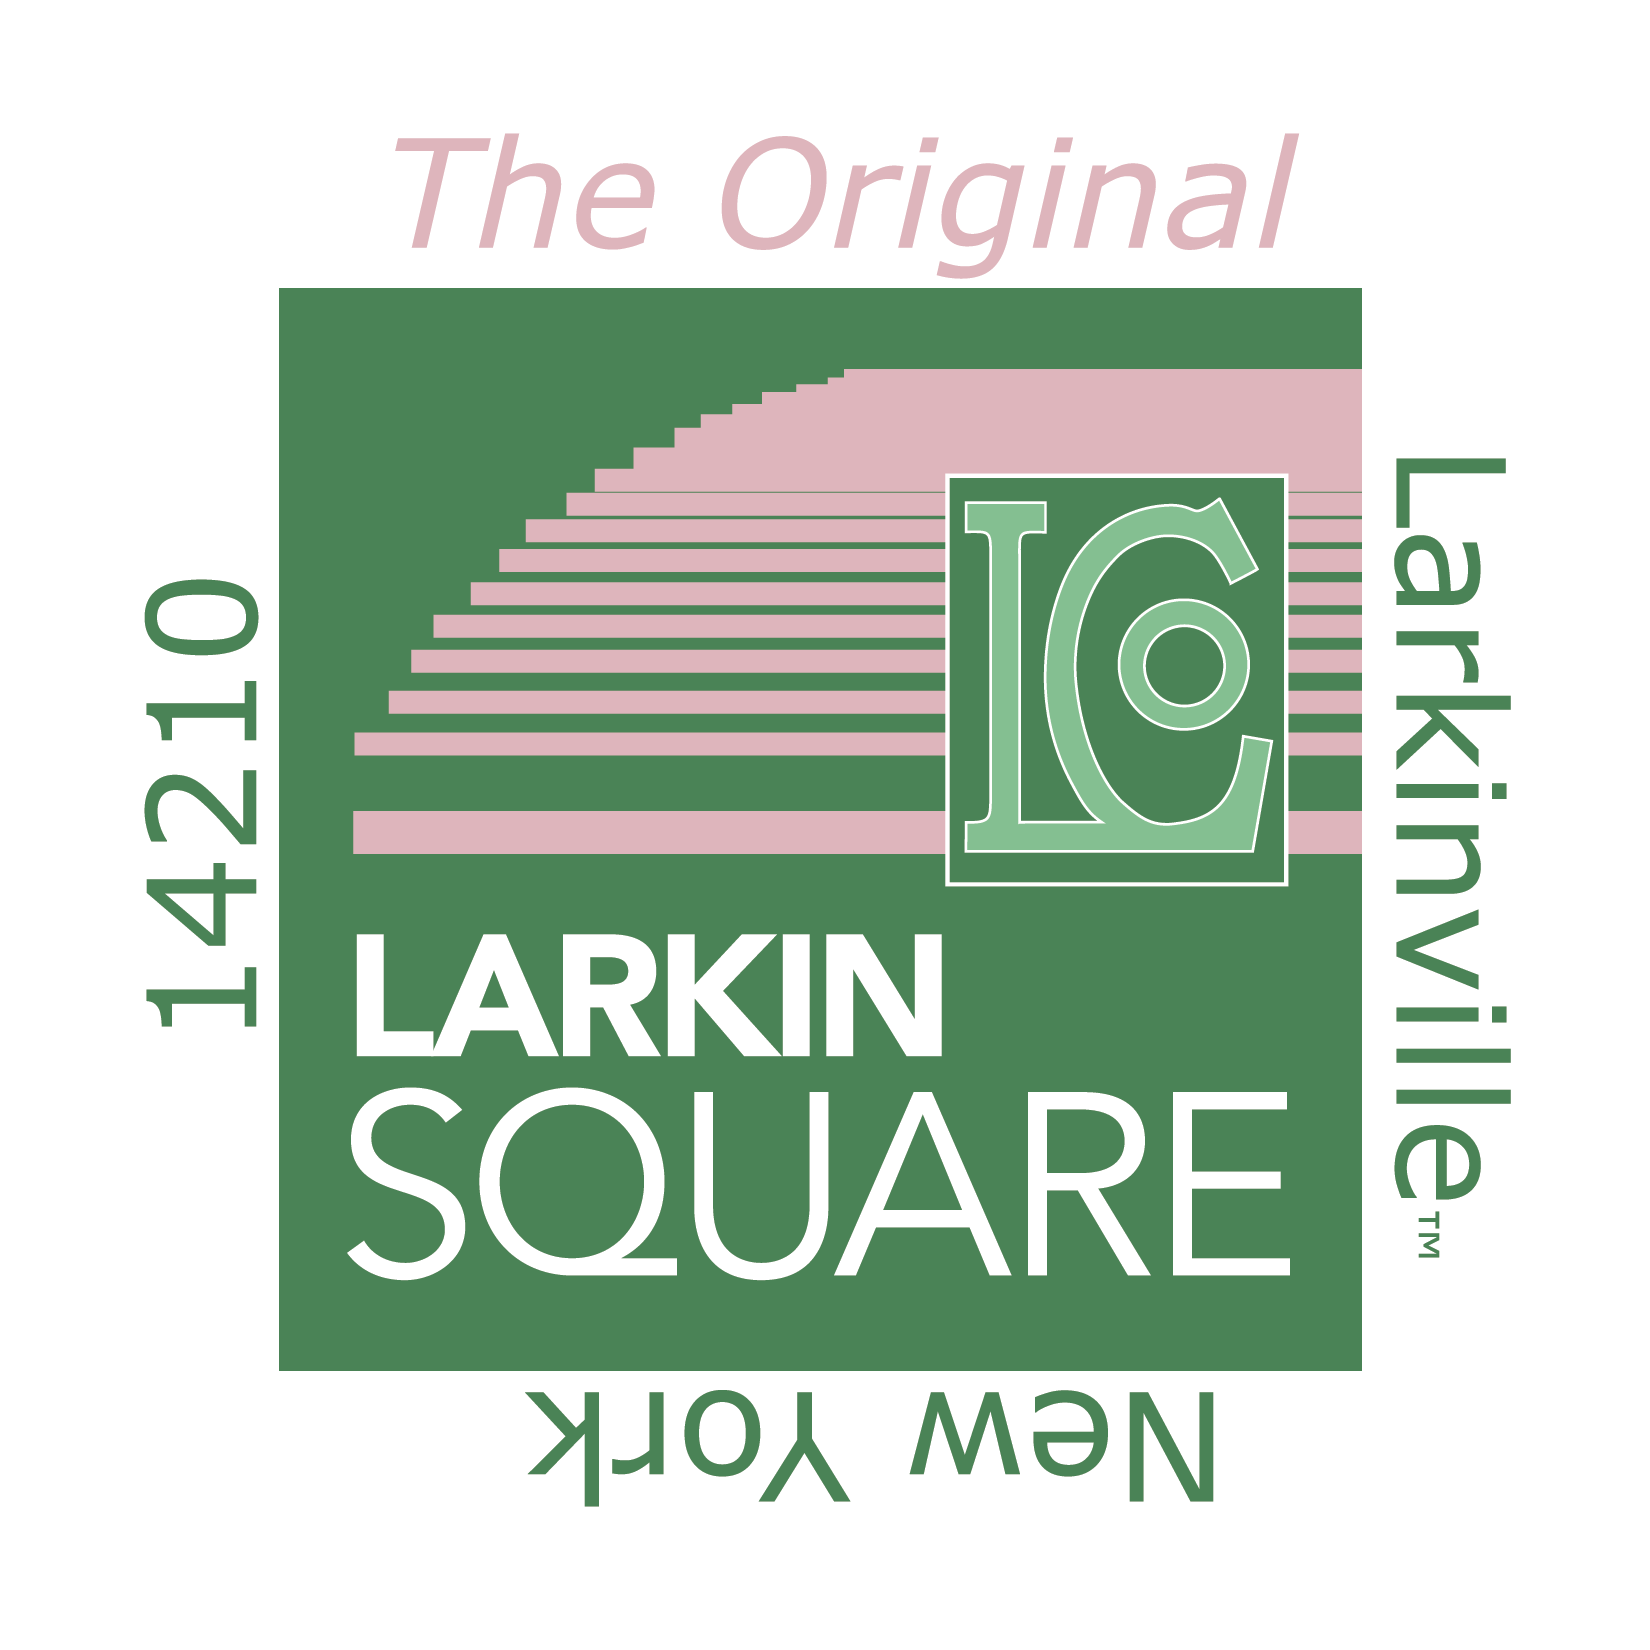 Explore Larkin Square